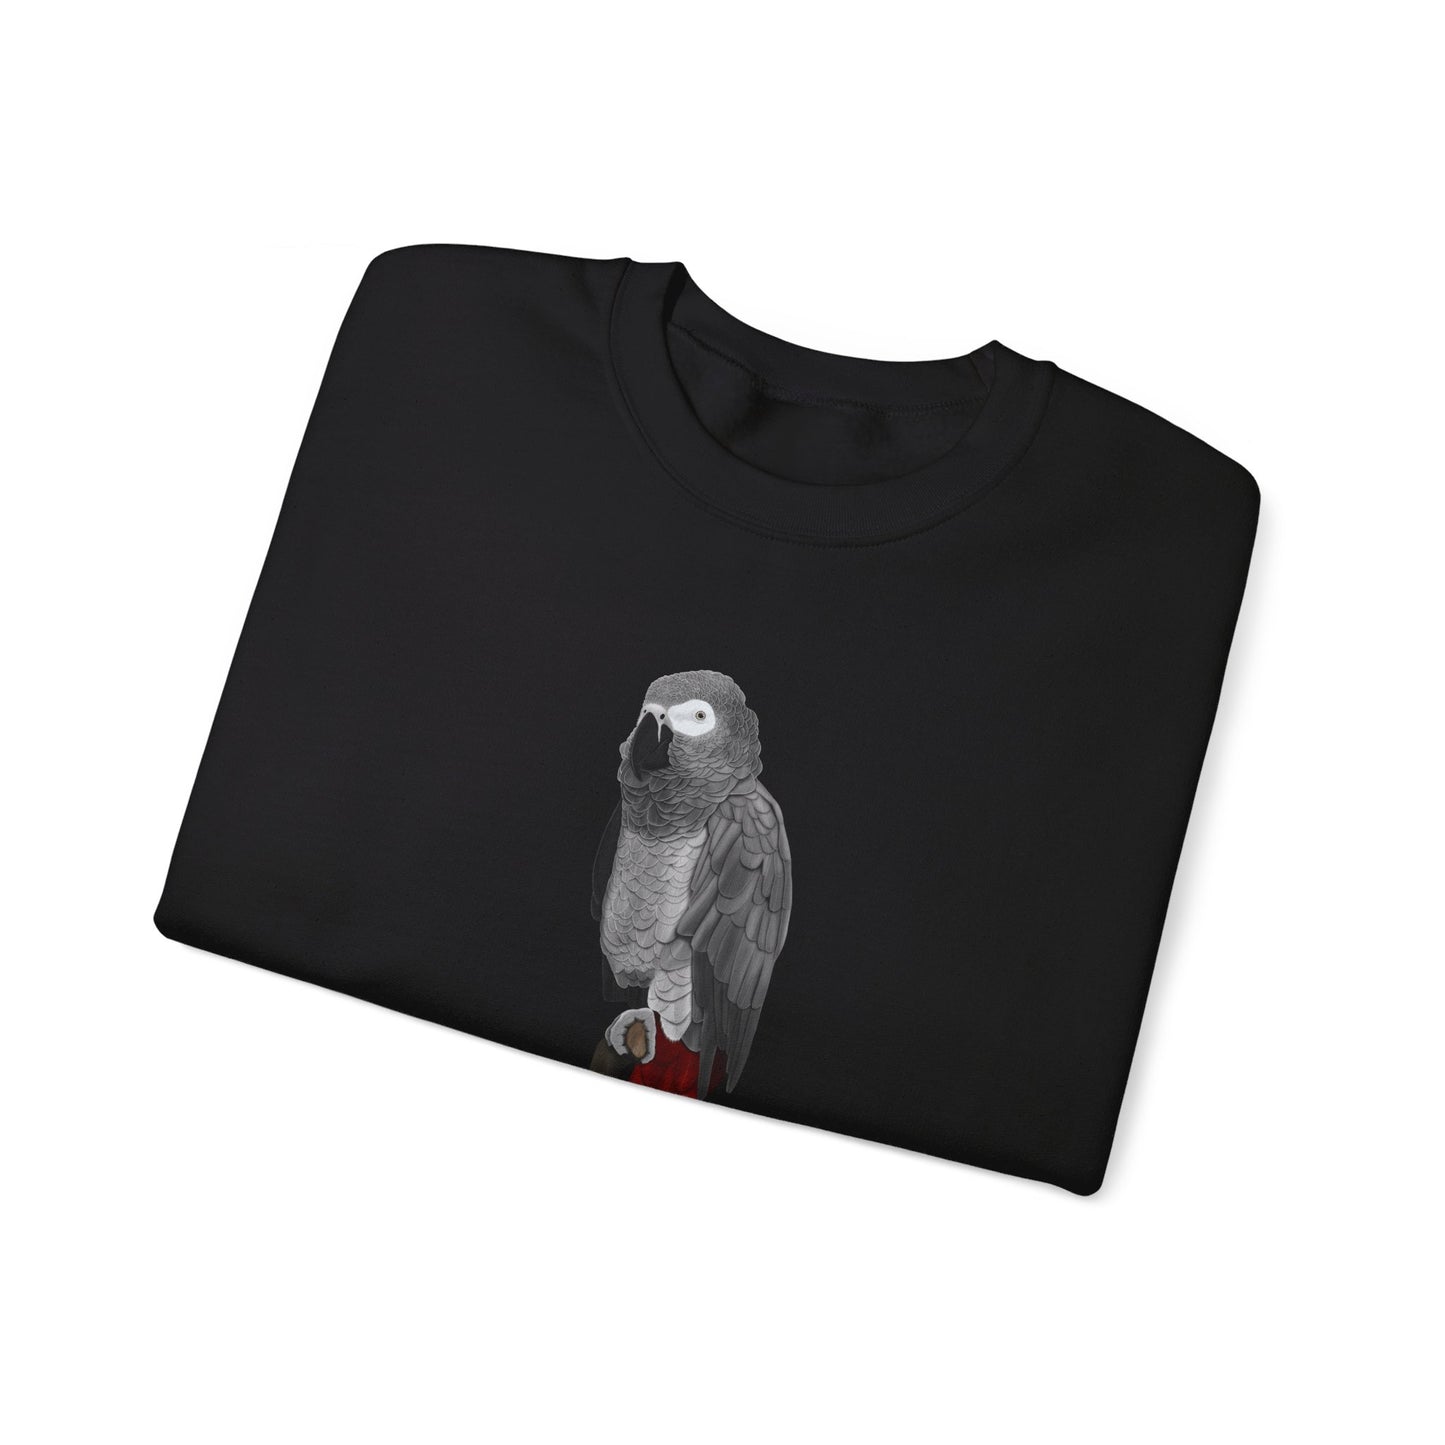 Grey Parrot Bird Watcher Biologist Crewneck Sweatshirt